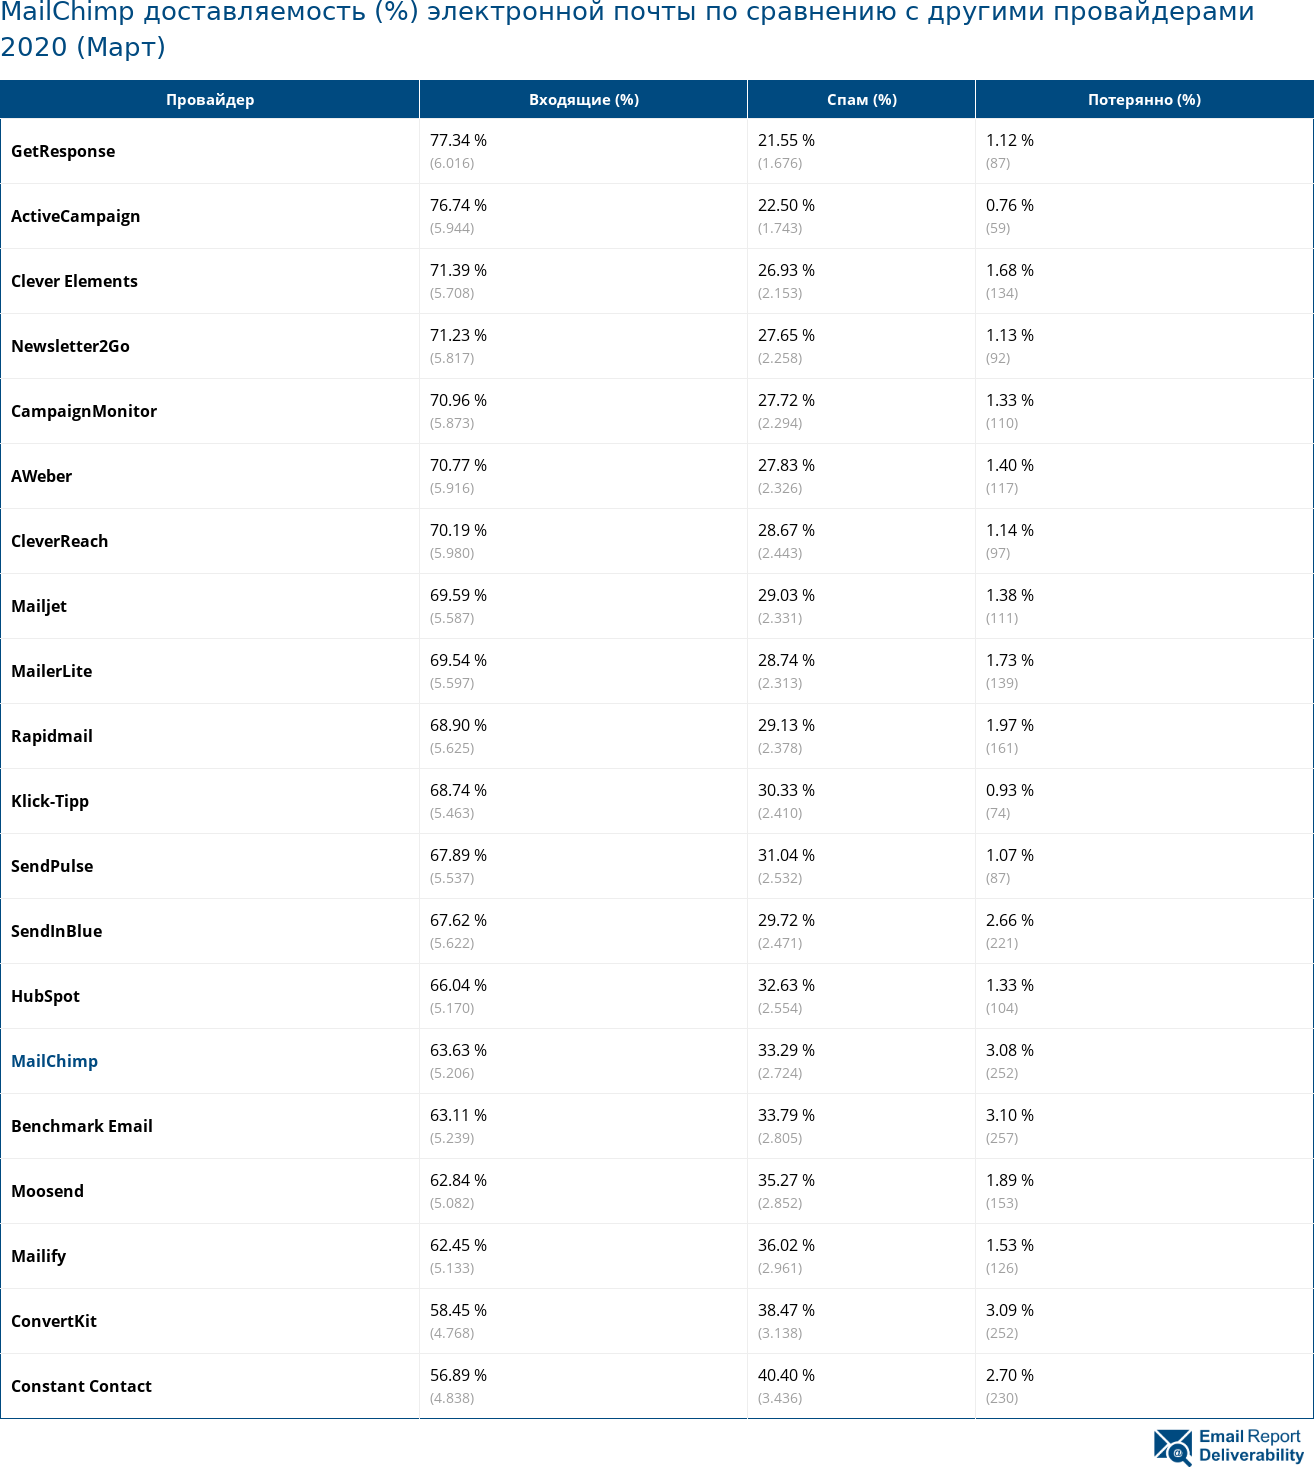 MailChimp доставляемость (%) электронной почты по сравнению с другими провайдерами 2020 (Март)